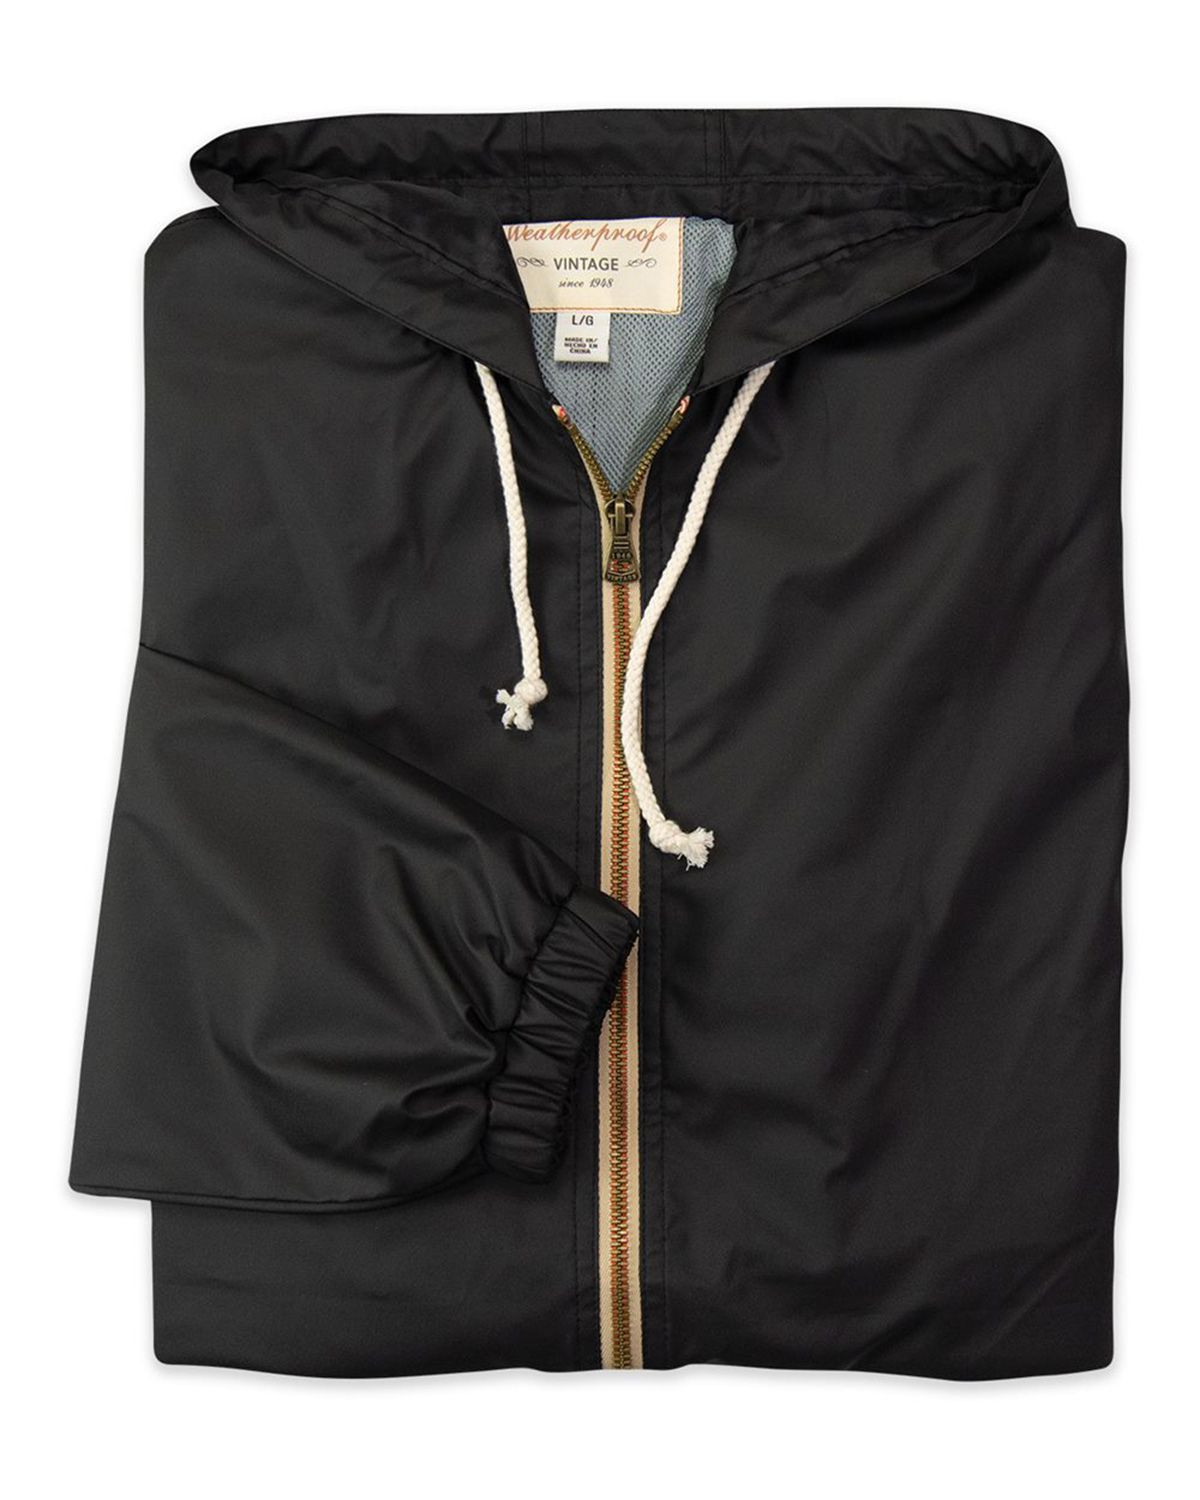 Weatherproof 193910 Men's Vintage Hooded Rain Jacket - Black - S #vintage